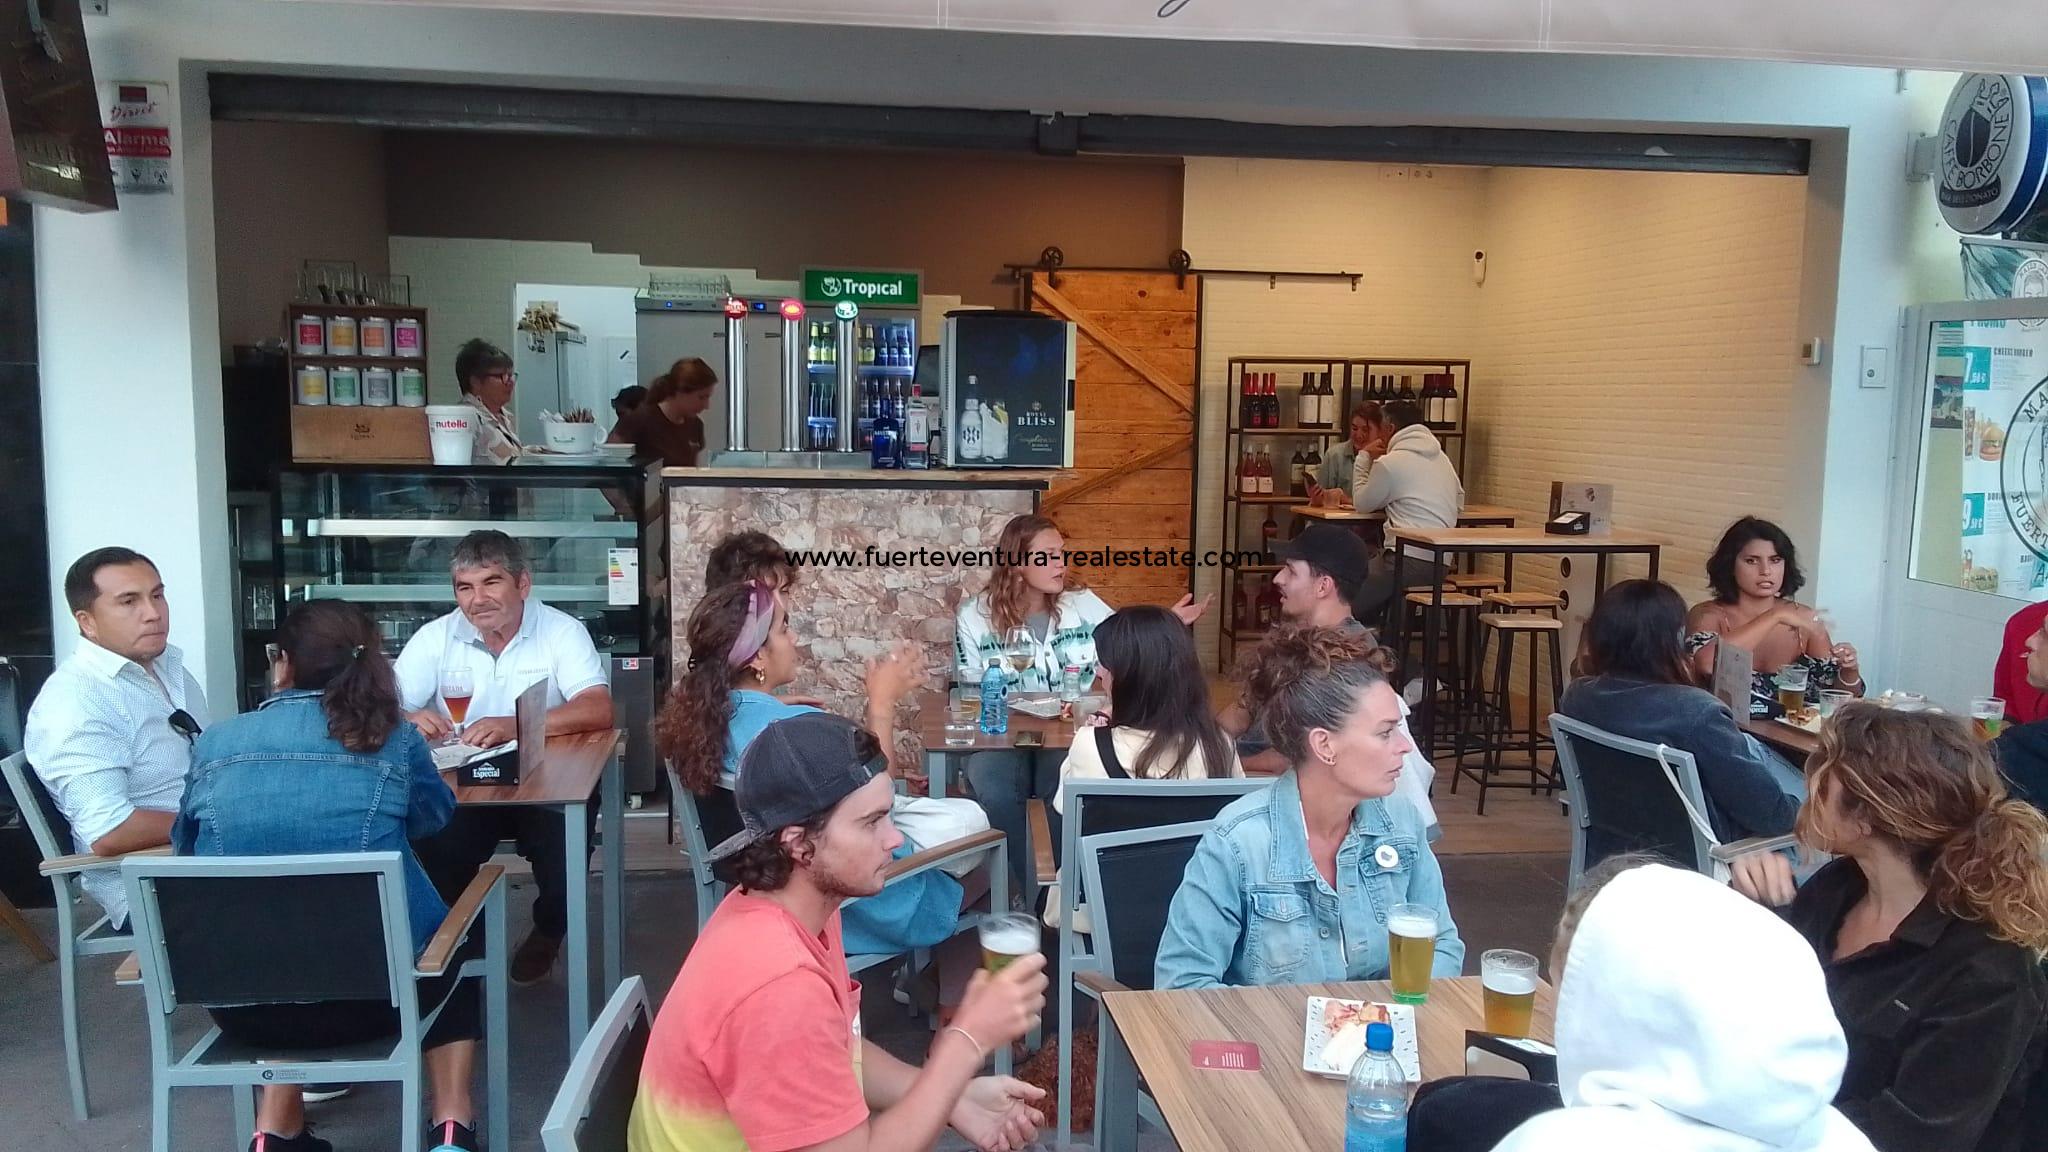  Un bar/caffetteria in affitto nella migliore zona commerciale di Corralejo